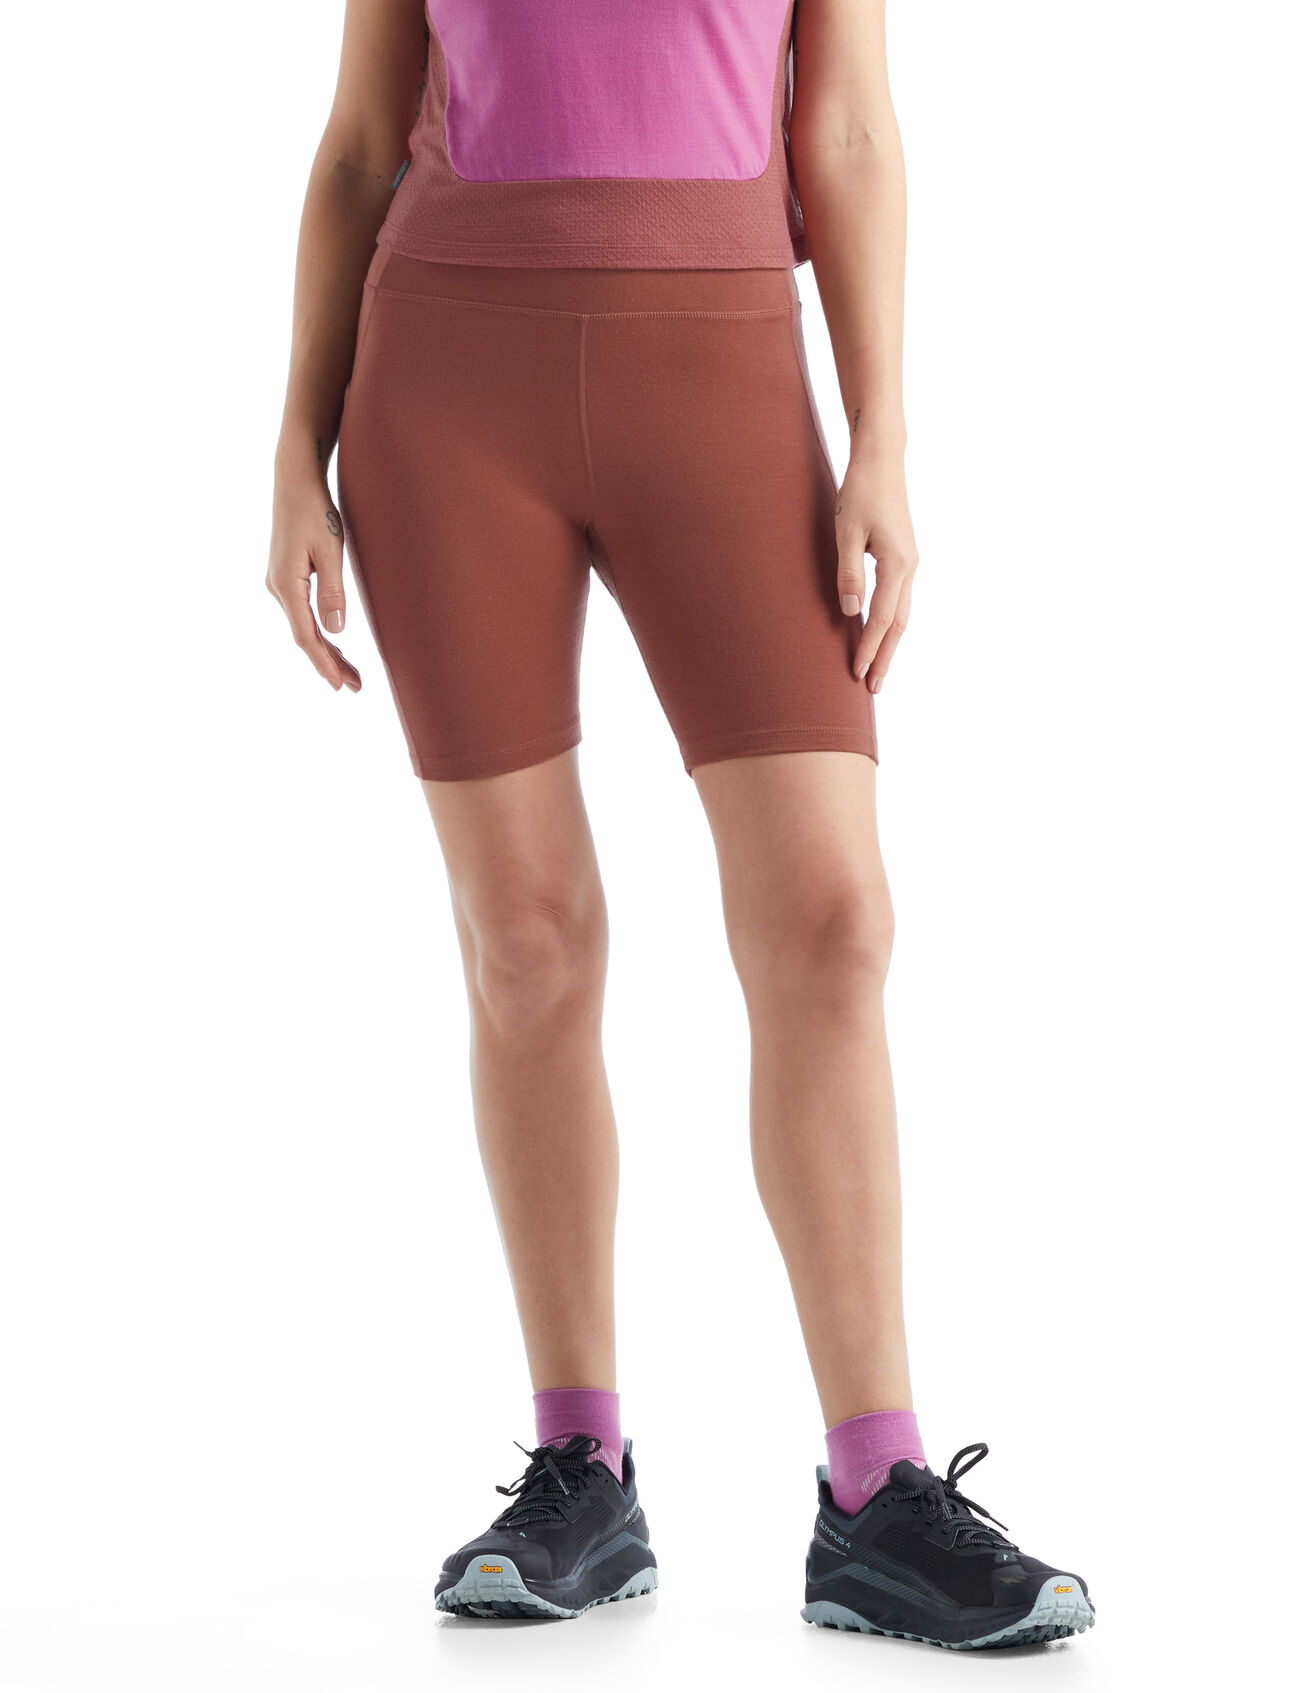 Merino Fastray High Rise Shorts  Damen Eine funktionelle, passgenaue Tights für aktive Performance auf oder abseits der Trails, die Fastray High Rise Shorts überzeugt durch eine stretchige Merinomischung und einen komfortablen hohen Bund. 